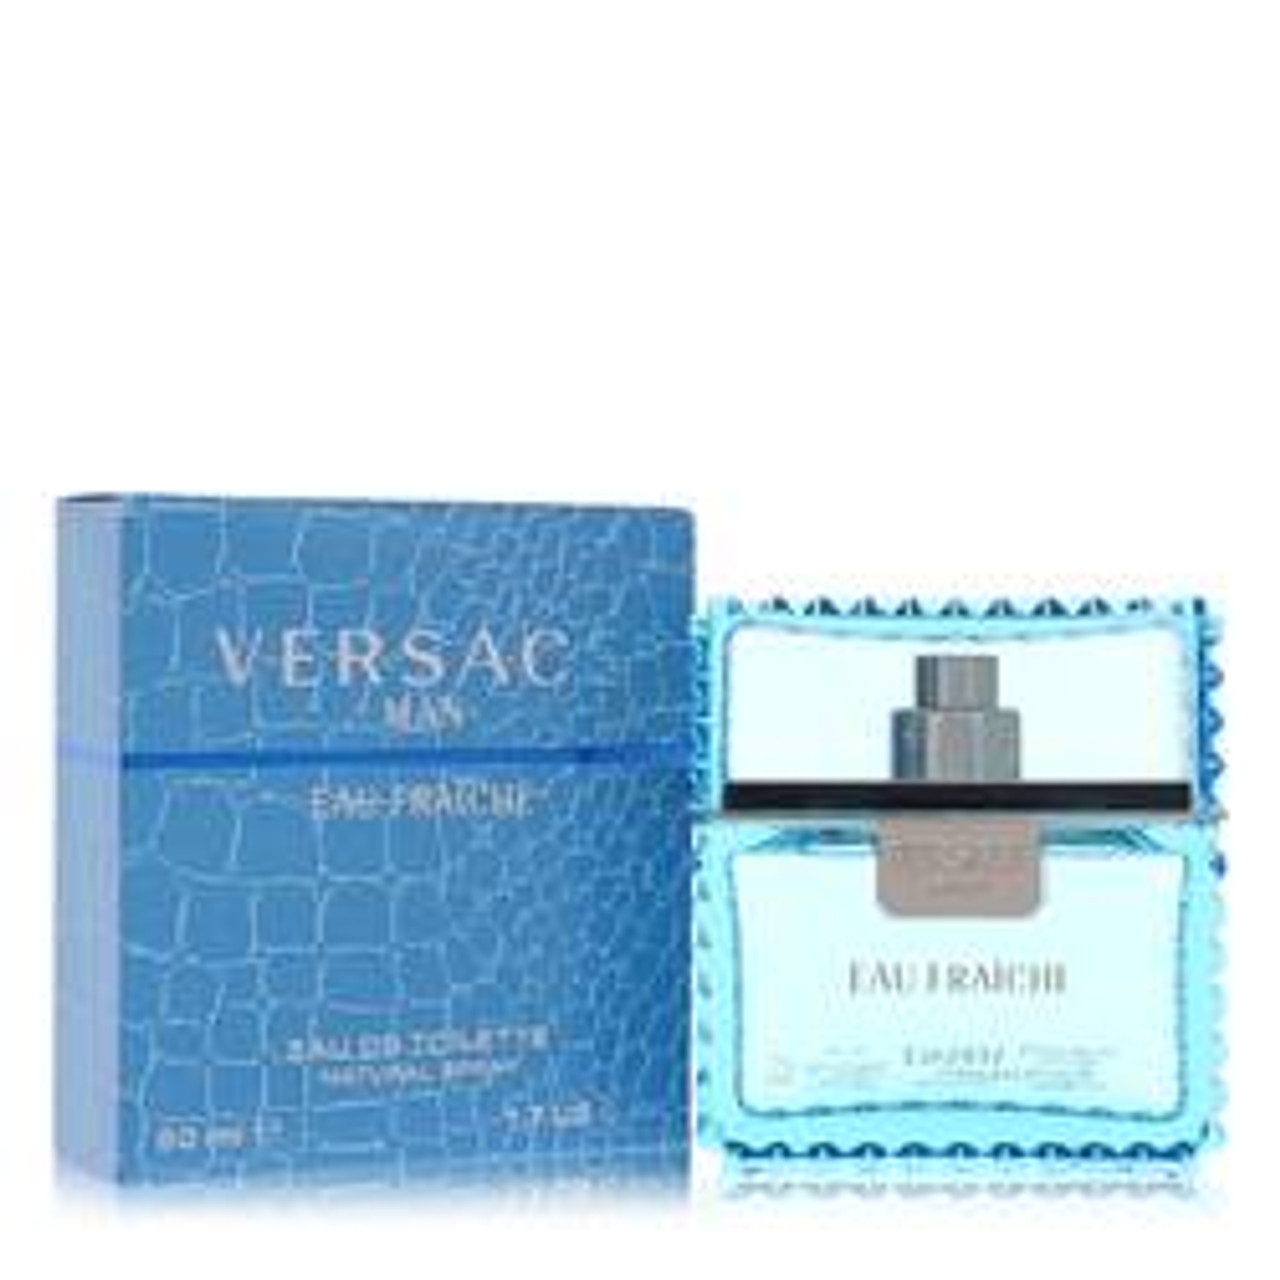 Versace Man Cologne By Versace Eau Fraiche Eau De Toilette Spray (Blue) 1.7 oz for Men - [From 116.00 - Choose pk Qty ] - *Ships from Miami